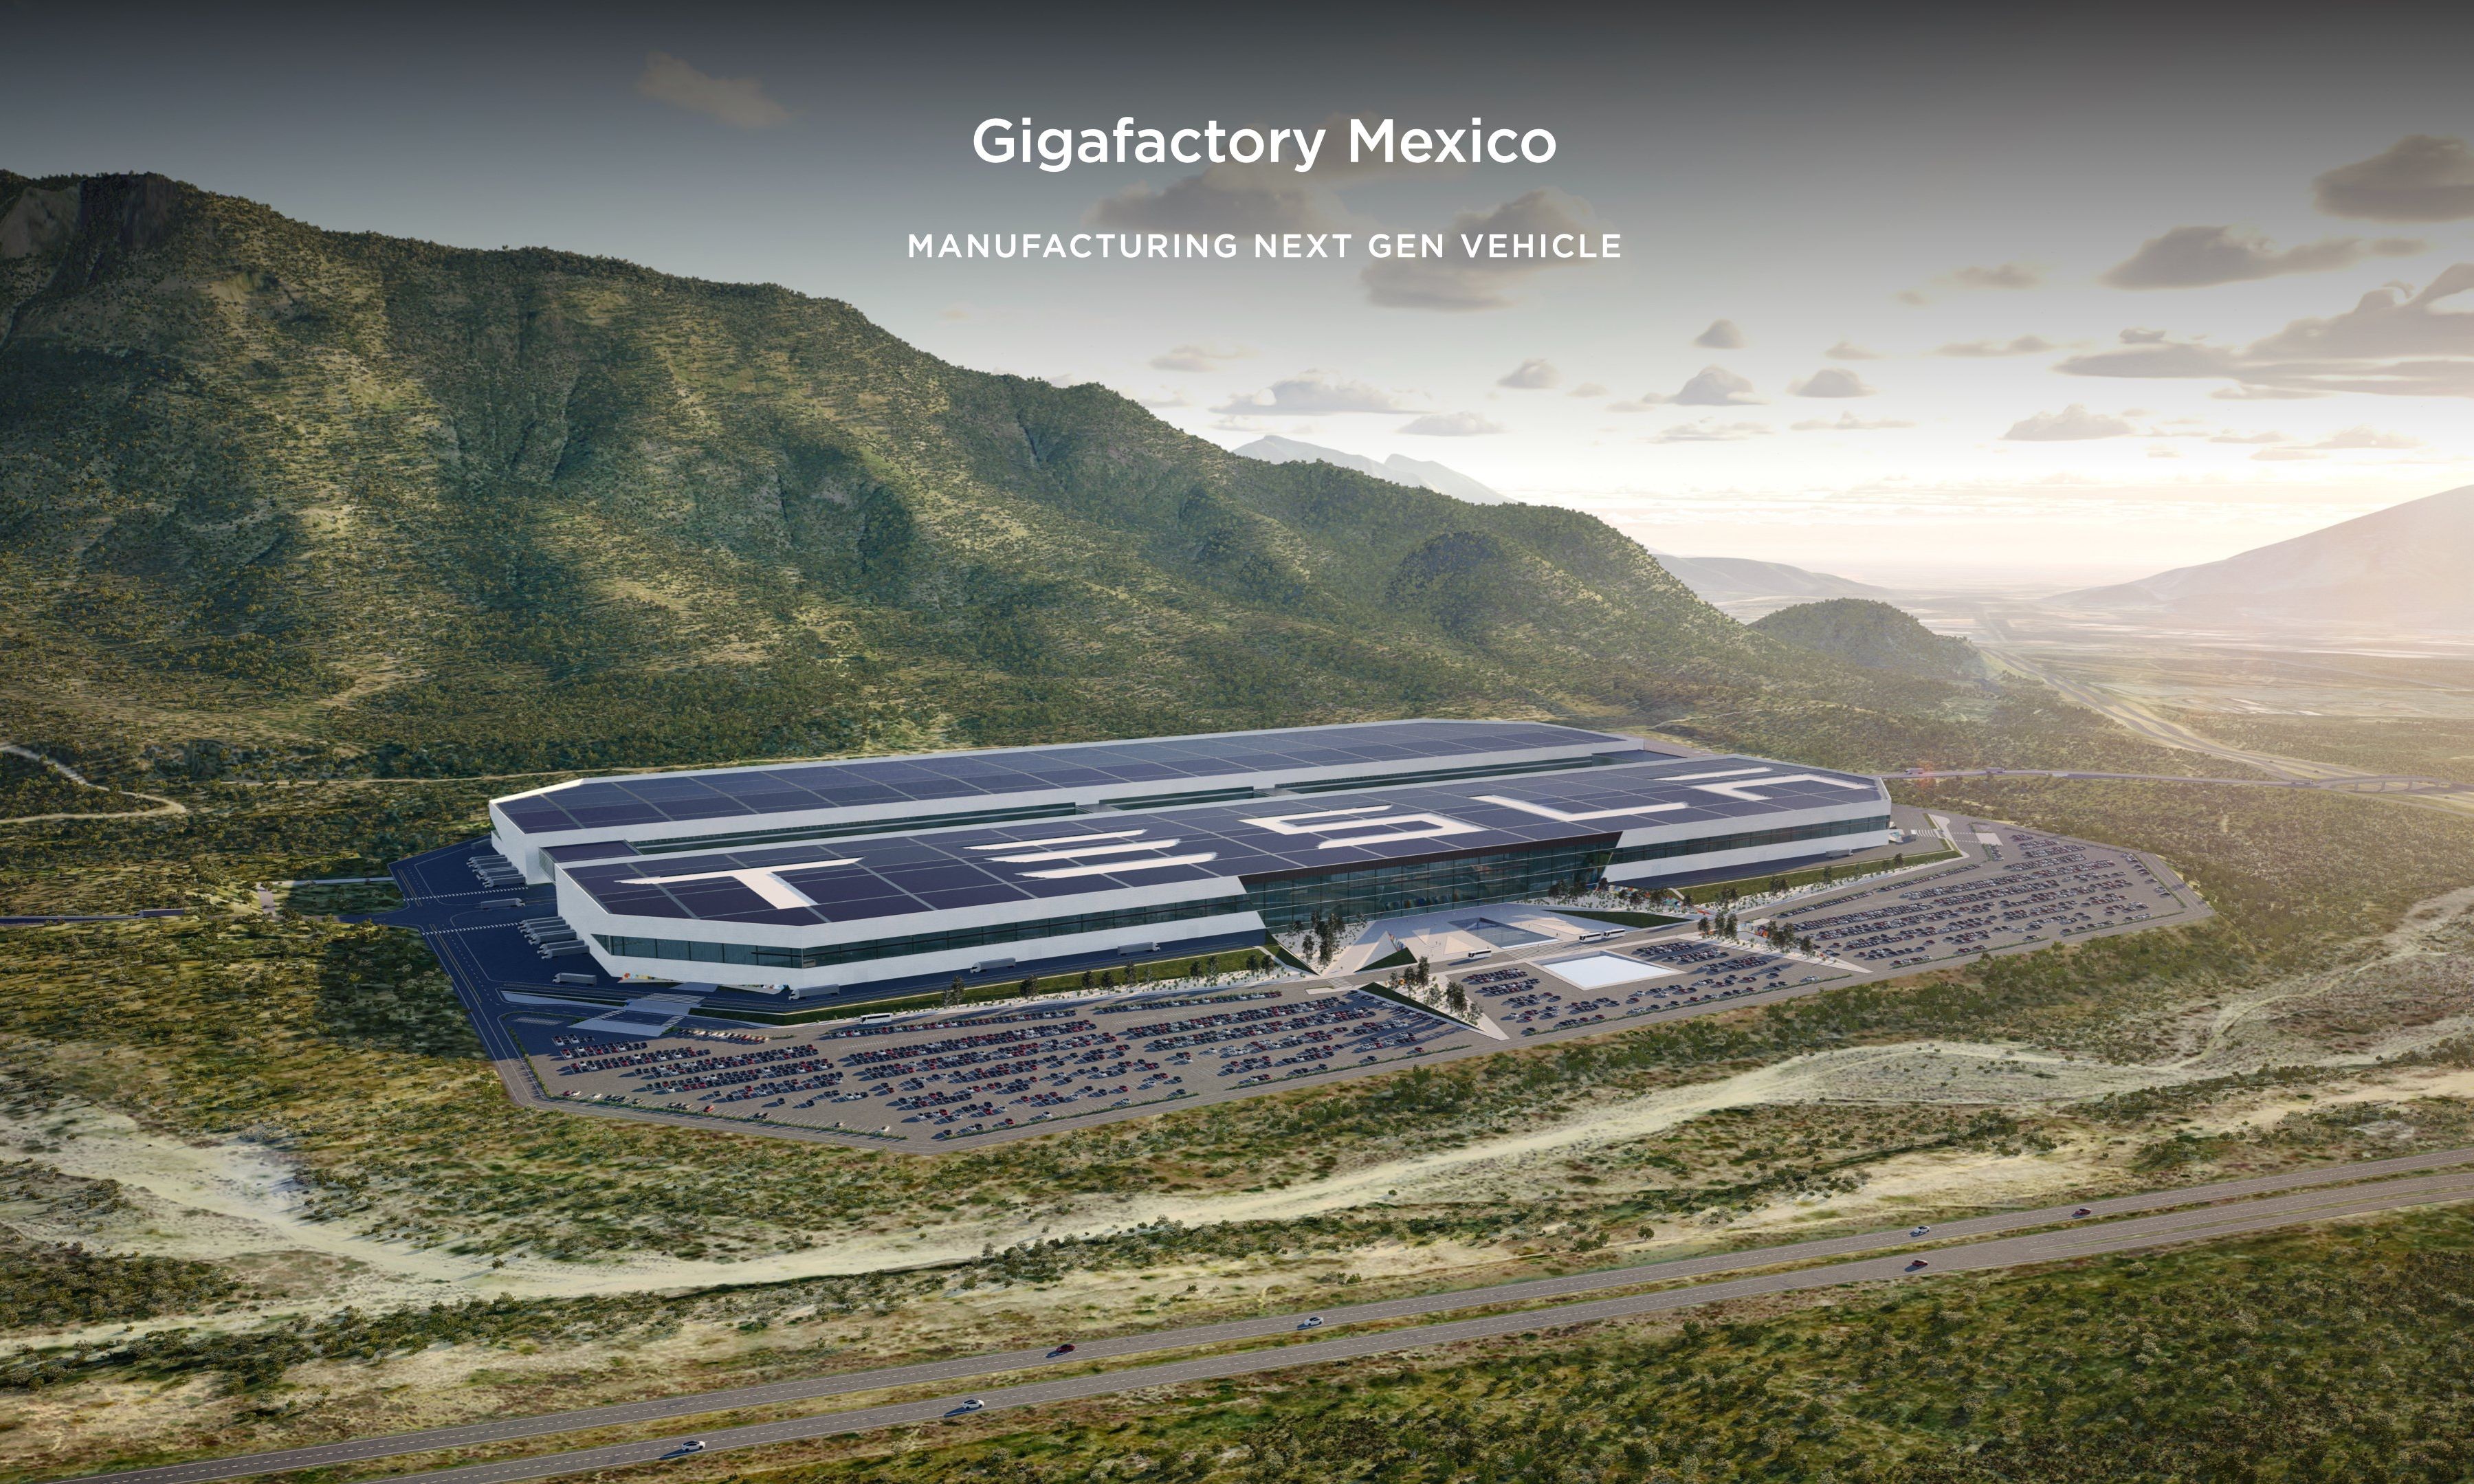 El estado de Nuevo León reúne las condiciones adecuadas para la última fábrica de Tesla, aunque tiene algunos retos importantes.